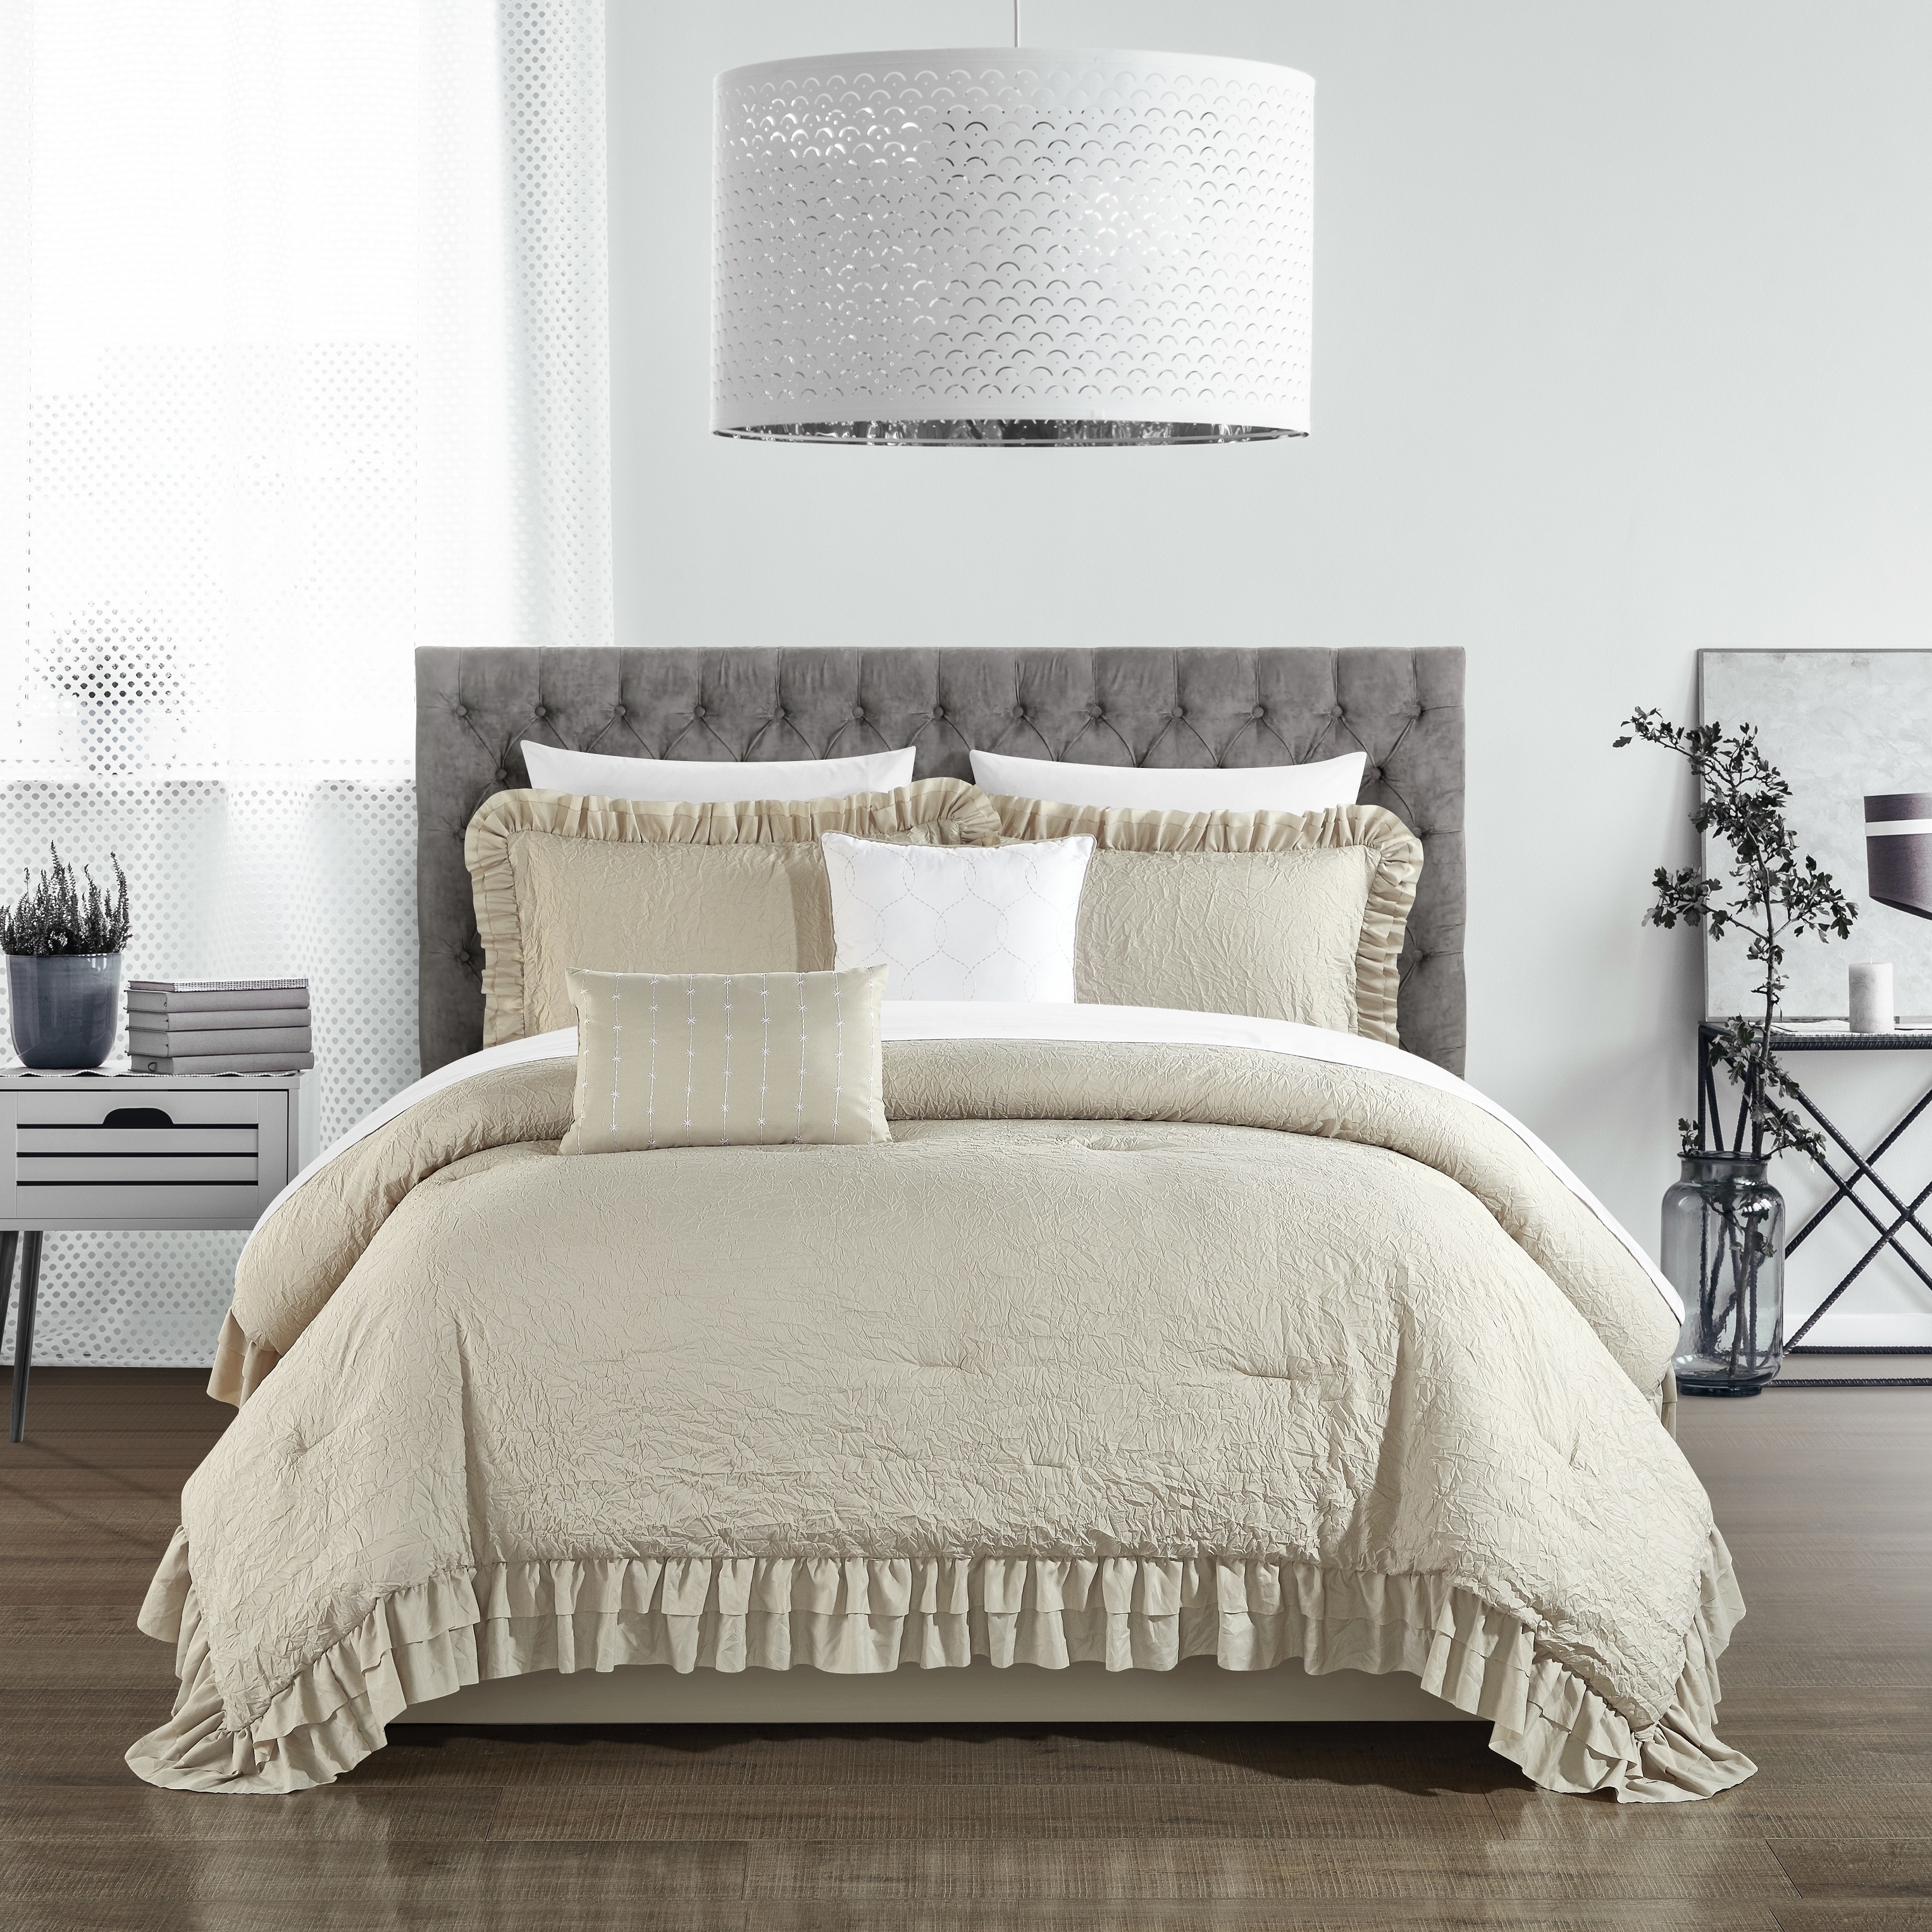 5 Piece Kensley Comforter Set Washed Crinkle Ruffled Flange Border Design Bedding - Beige, Twin